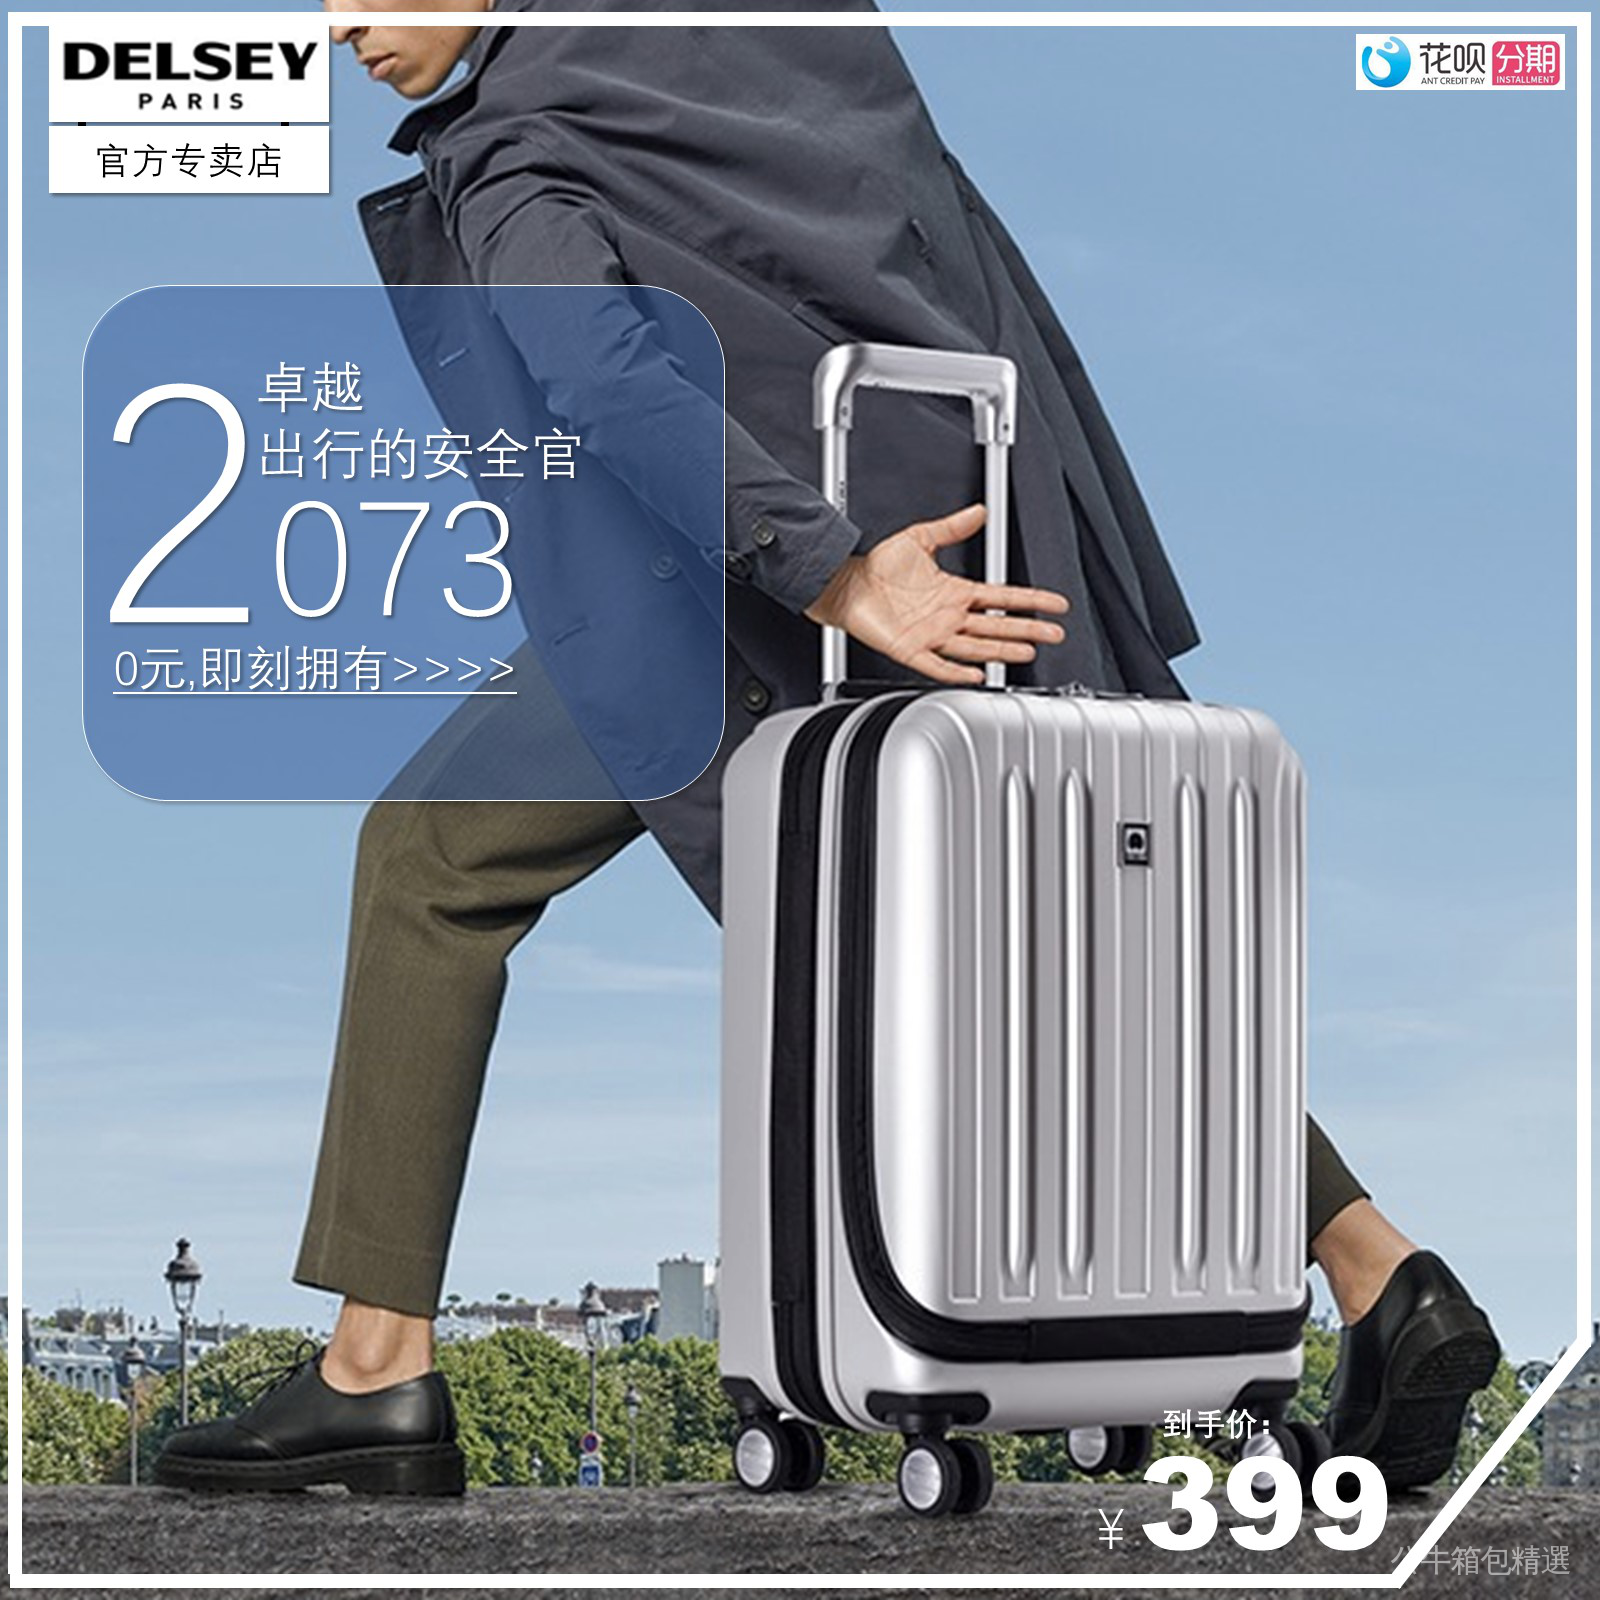 Delsey2073 กระเป๋าเดินทางล้อลาก เปิดด้านหน้า สไตล์ฝรั่งเศส 20 24 นิ้ว สําหรับผู้ชาย ผู้หญิง